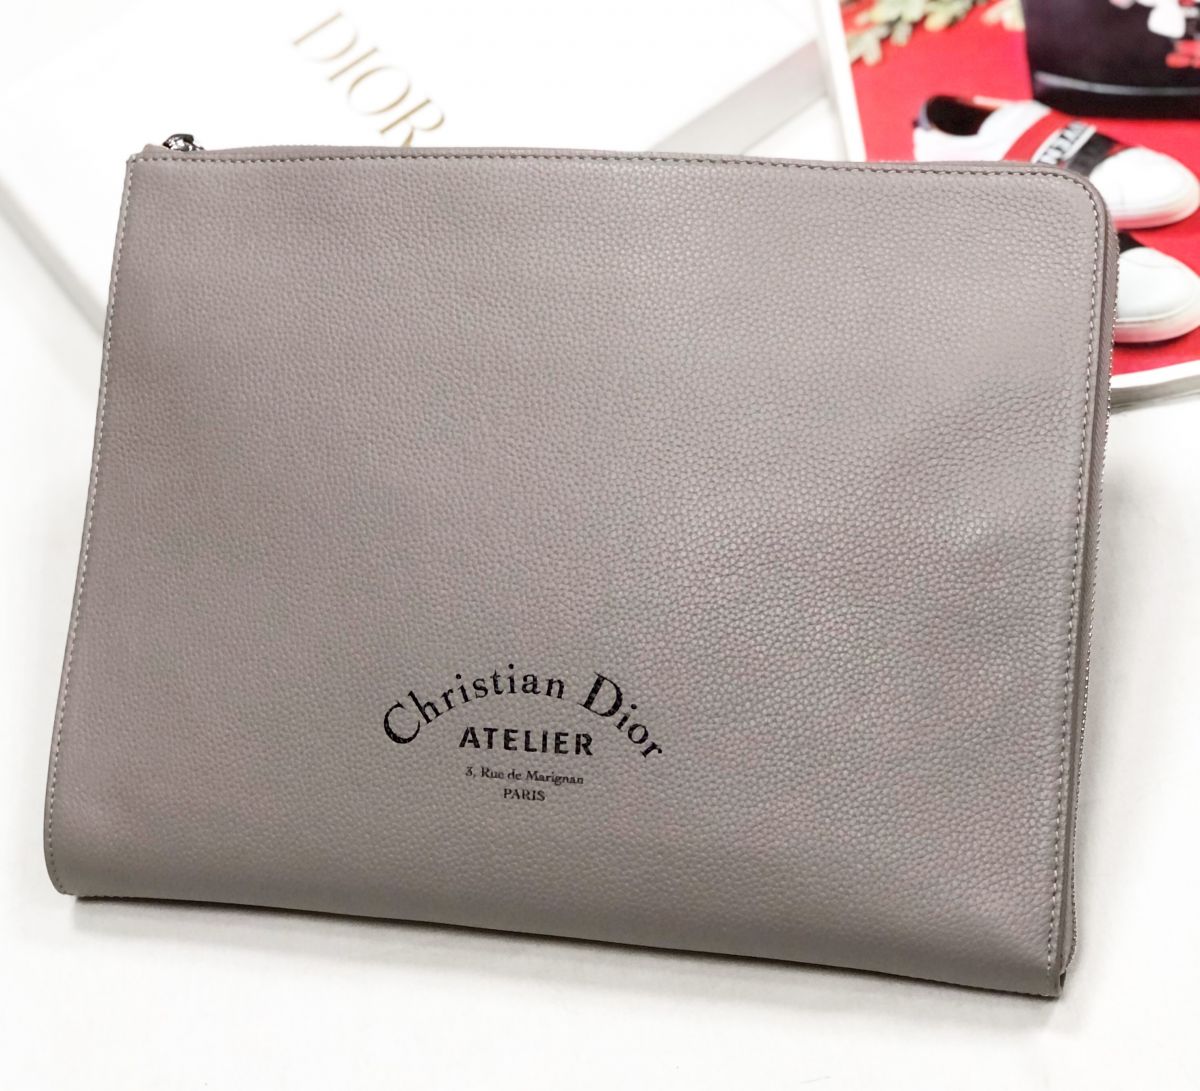 Папка Christian Dior размер 32/25 цена 46 155 руб
